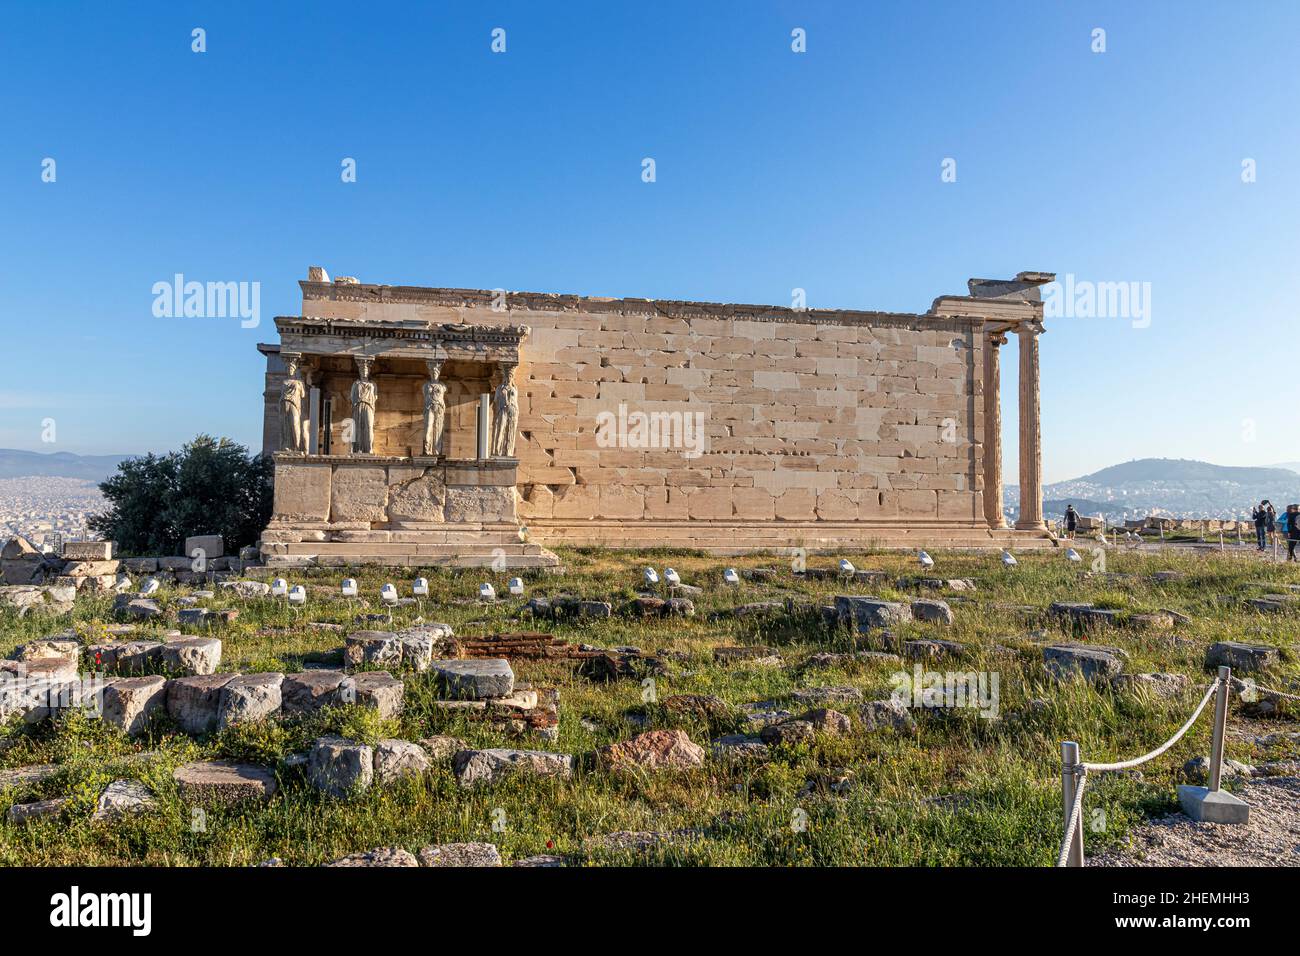 Athen, Griechenland. Die Maiden-Veranda des Erechtheion-Tempels in der Akropolis mit den Skulpturen, die als Karyatiden bekannt sind Stockfoto